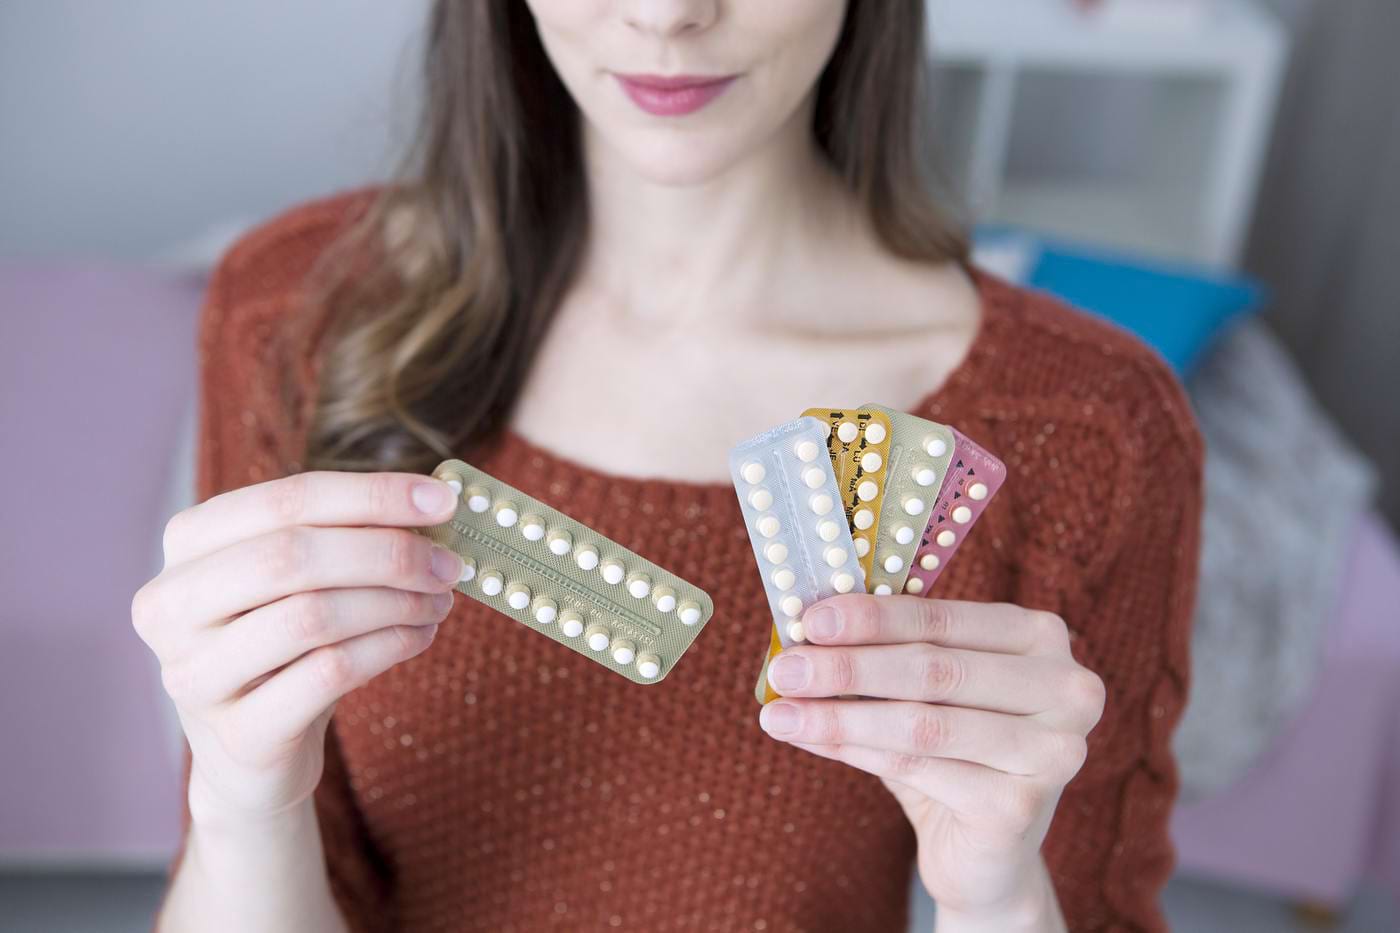 contraceptivele orale pot provoca pierderea în greutate)